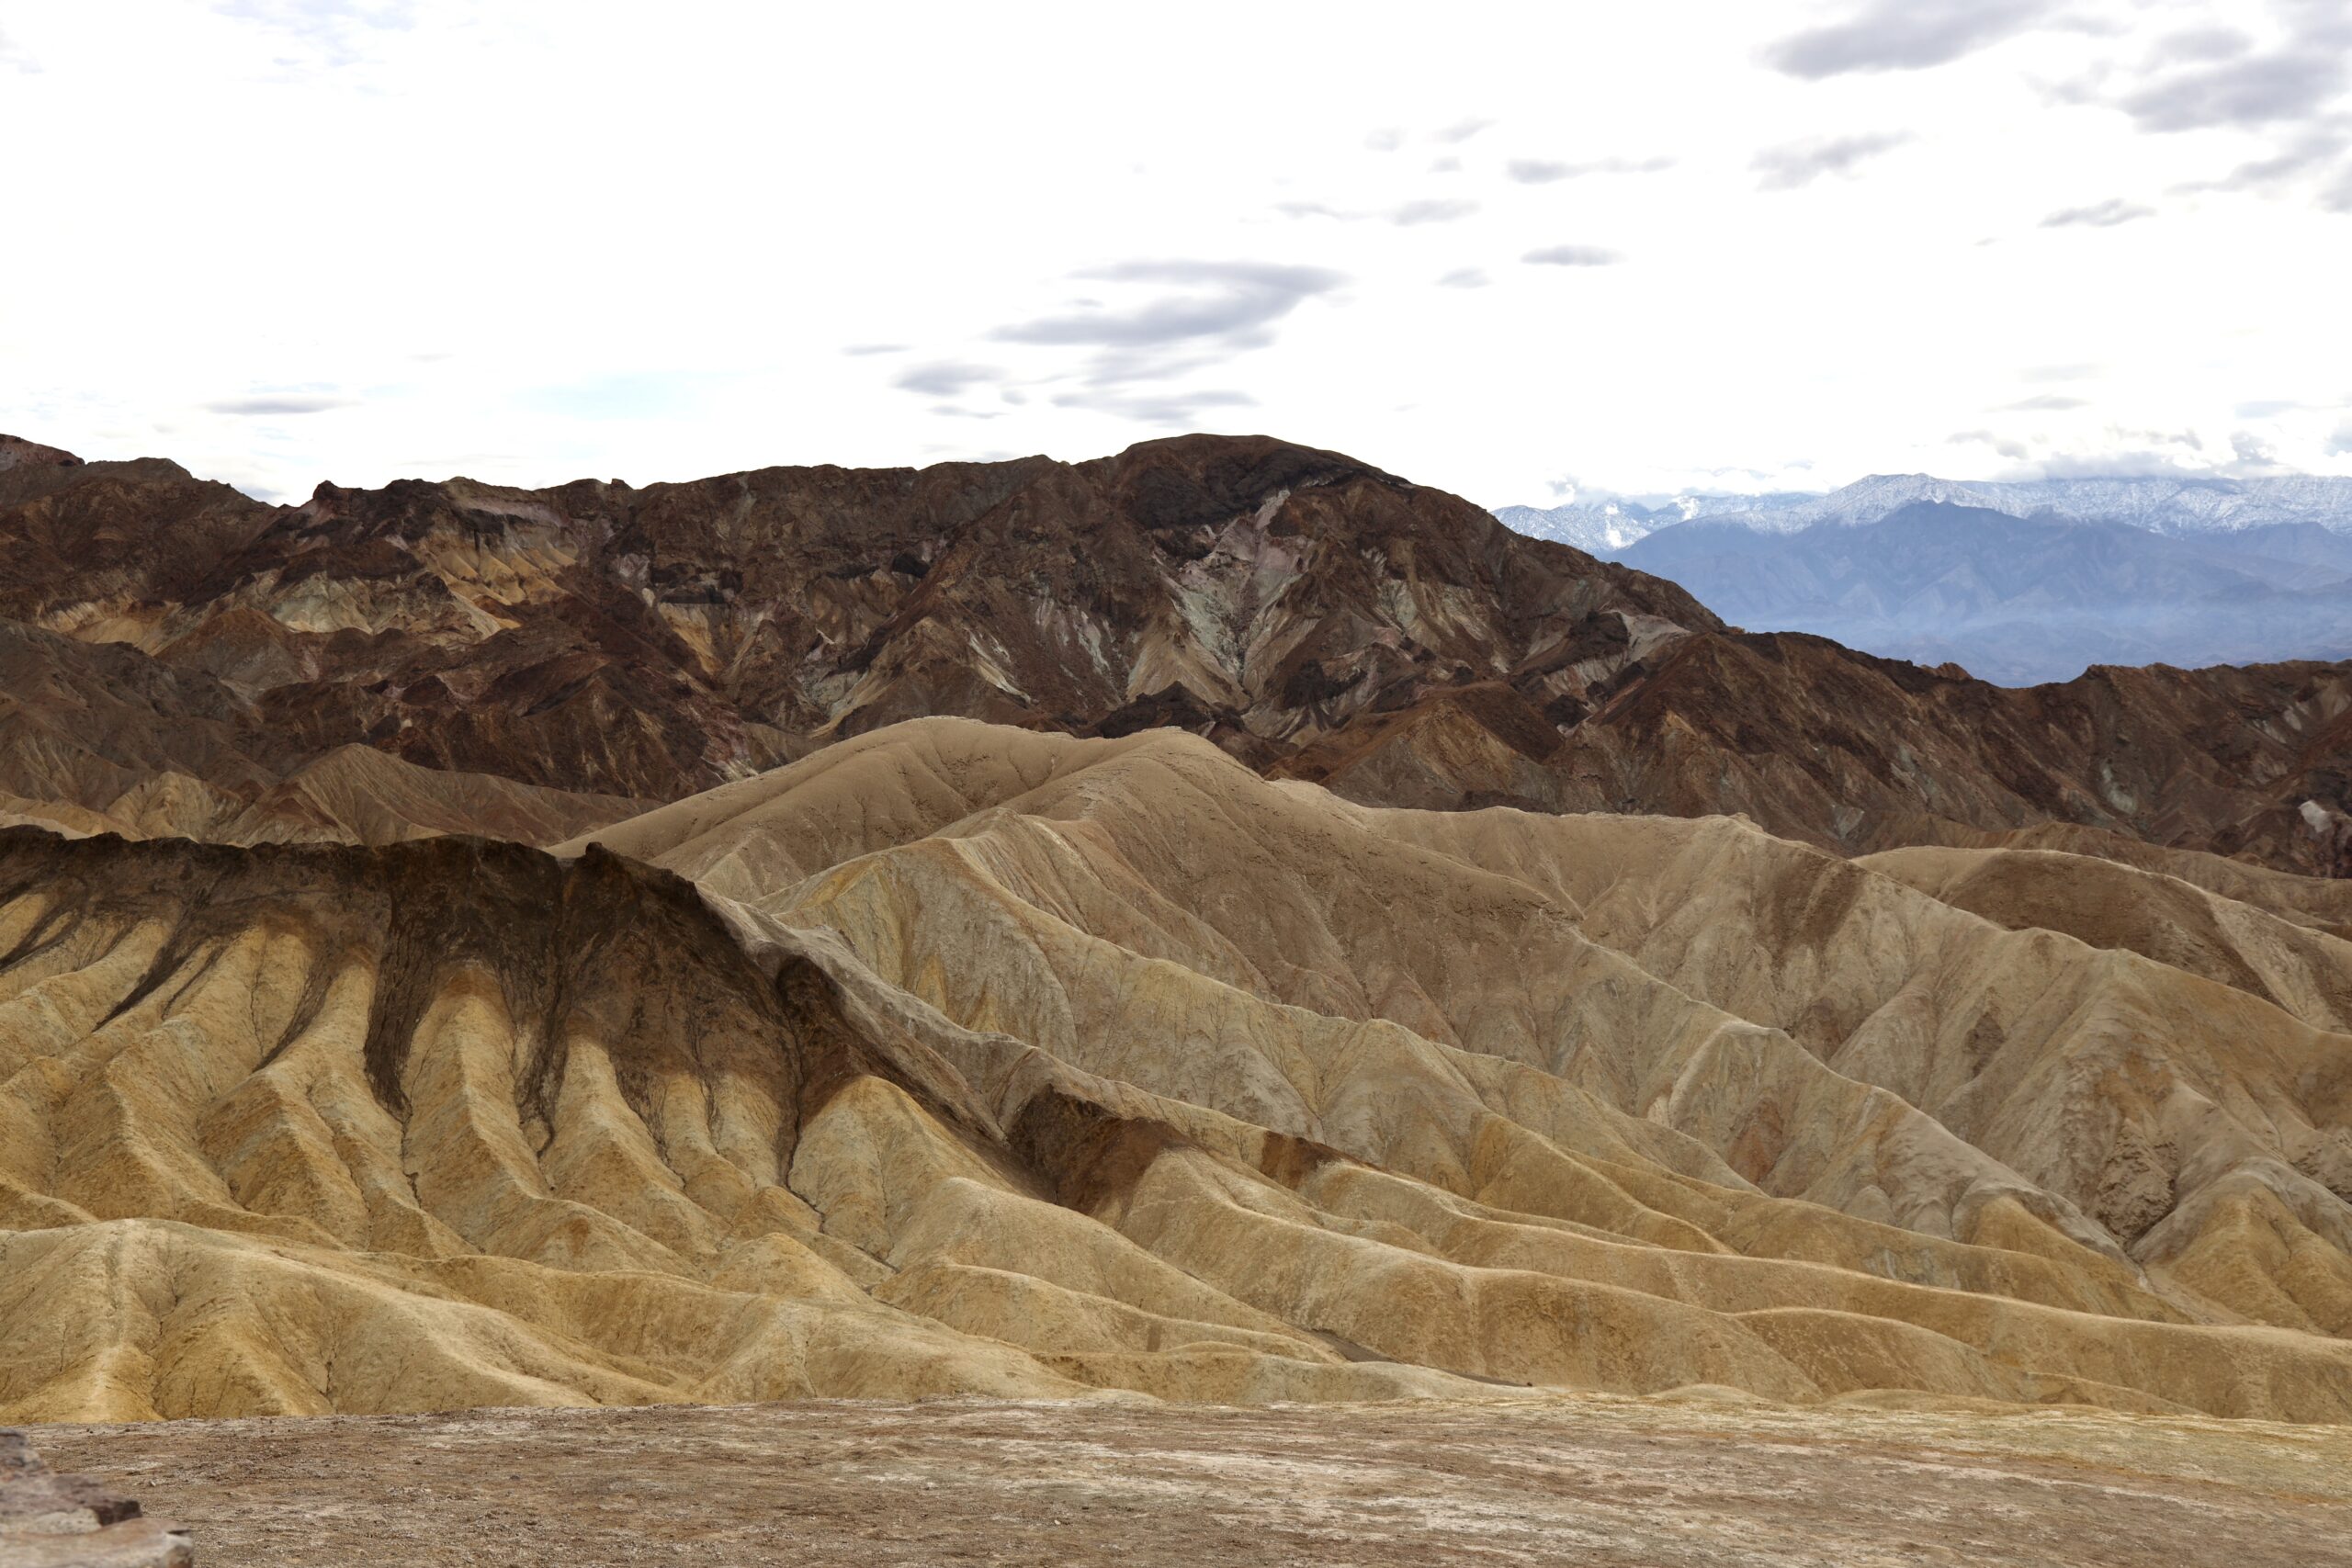 Zabriskie Point, Death Valley National Park